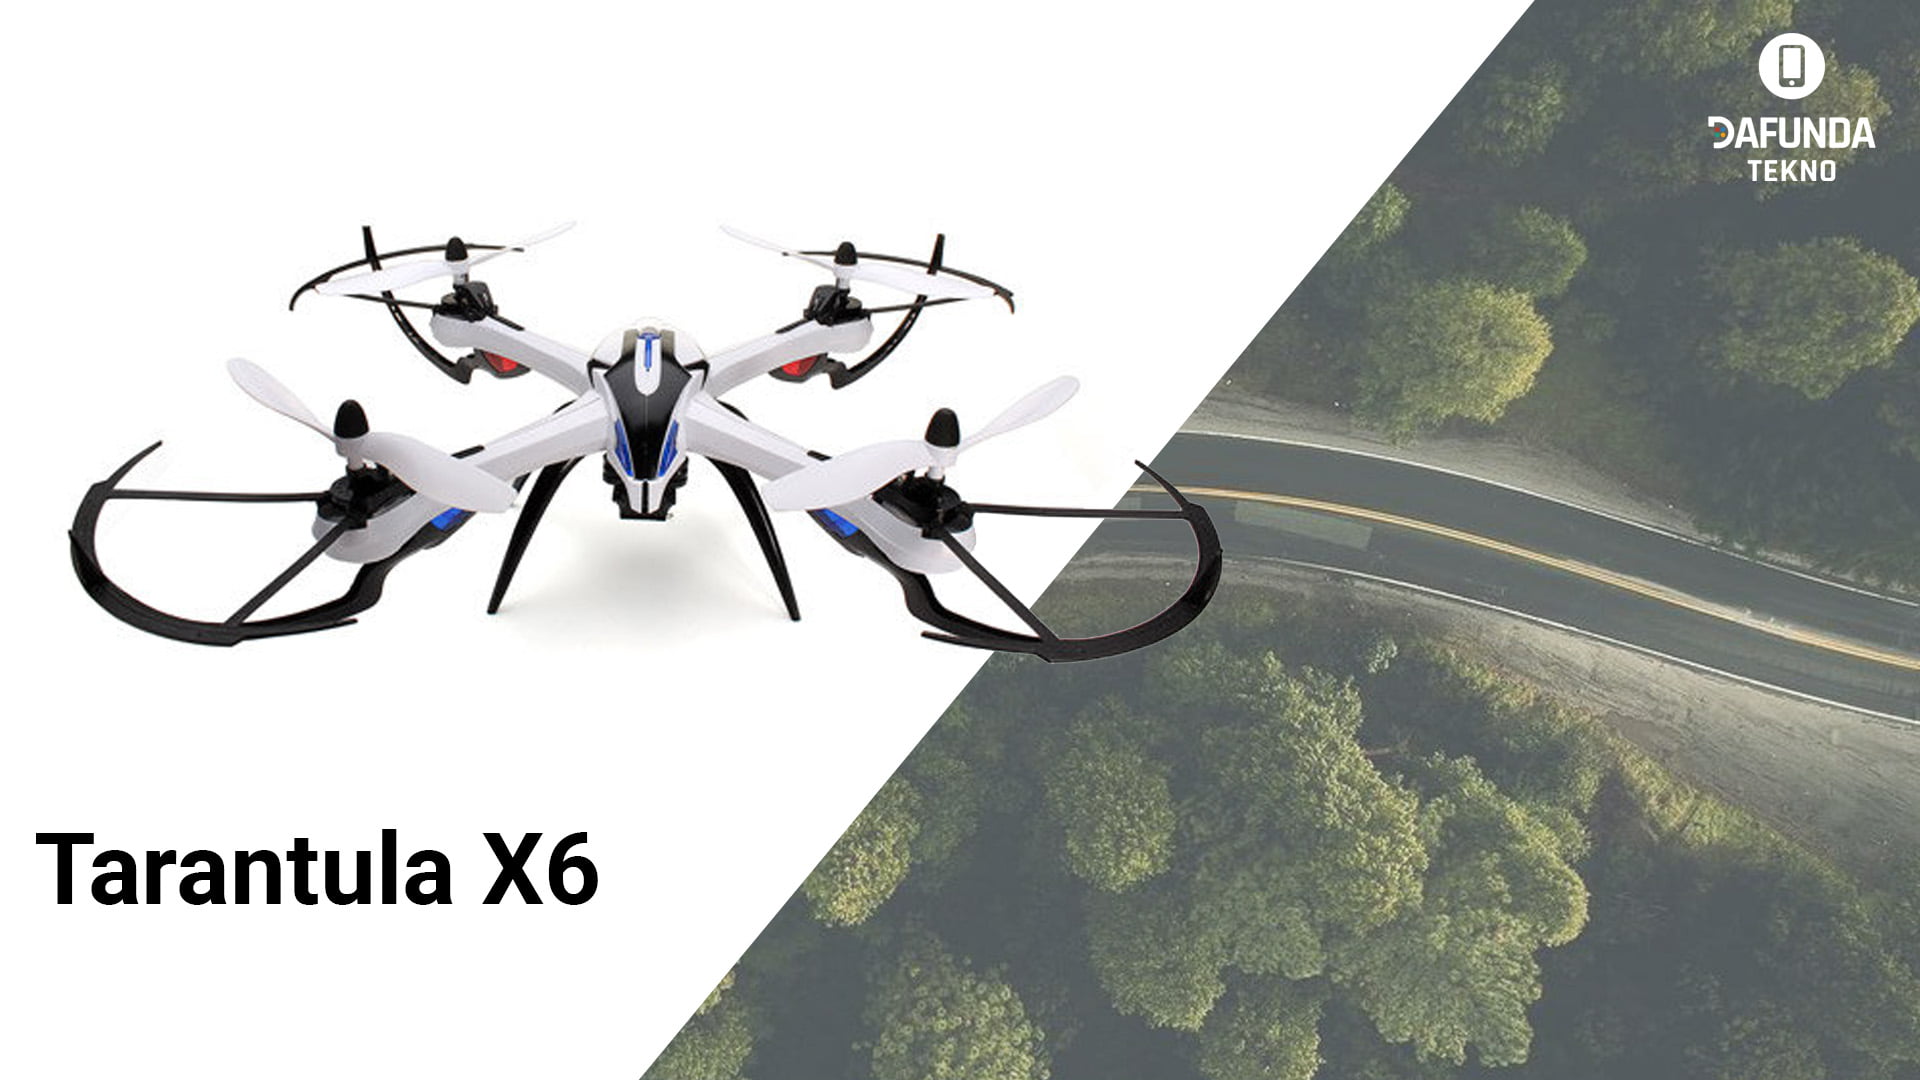 Drone Murah Terbaik Harga dibawah 2 Jutaan Tarantula X6 1